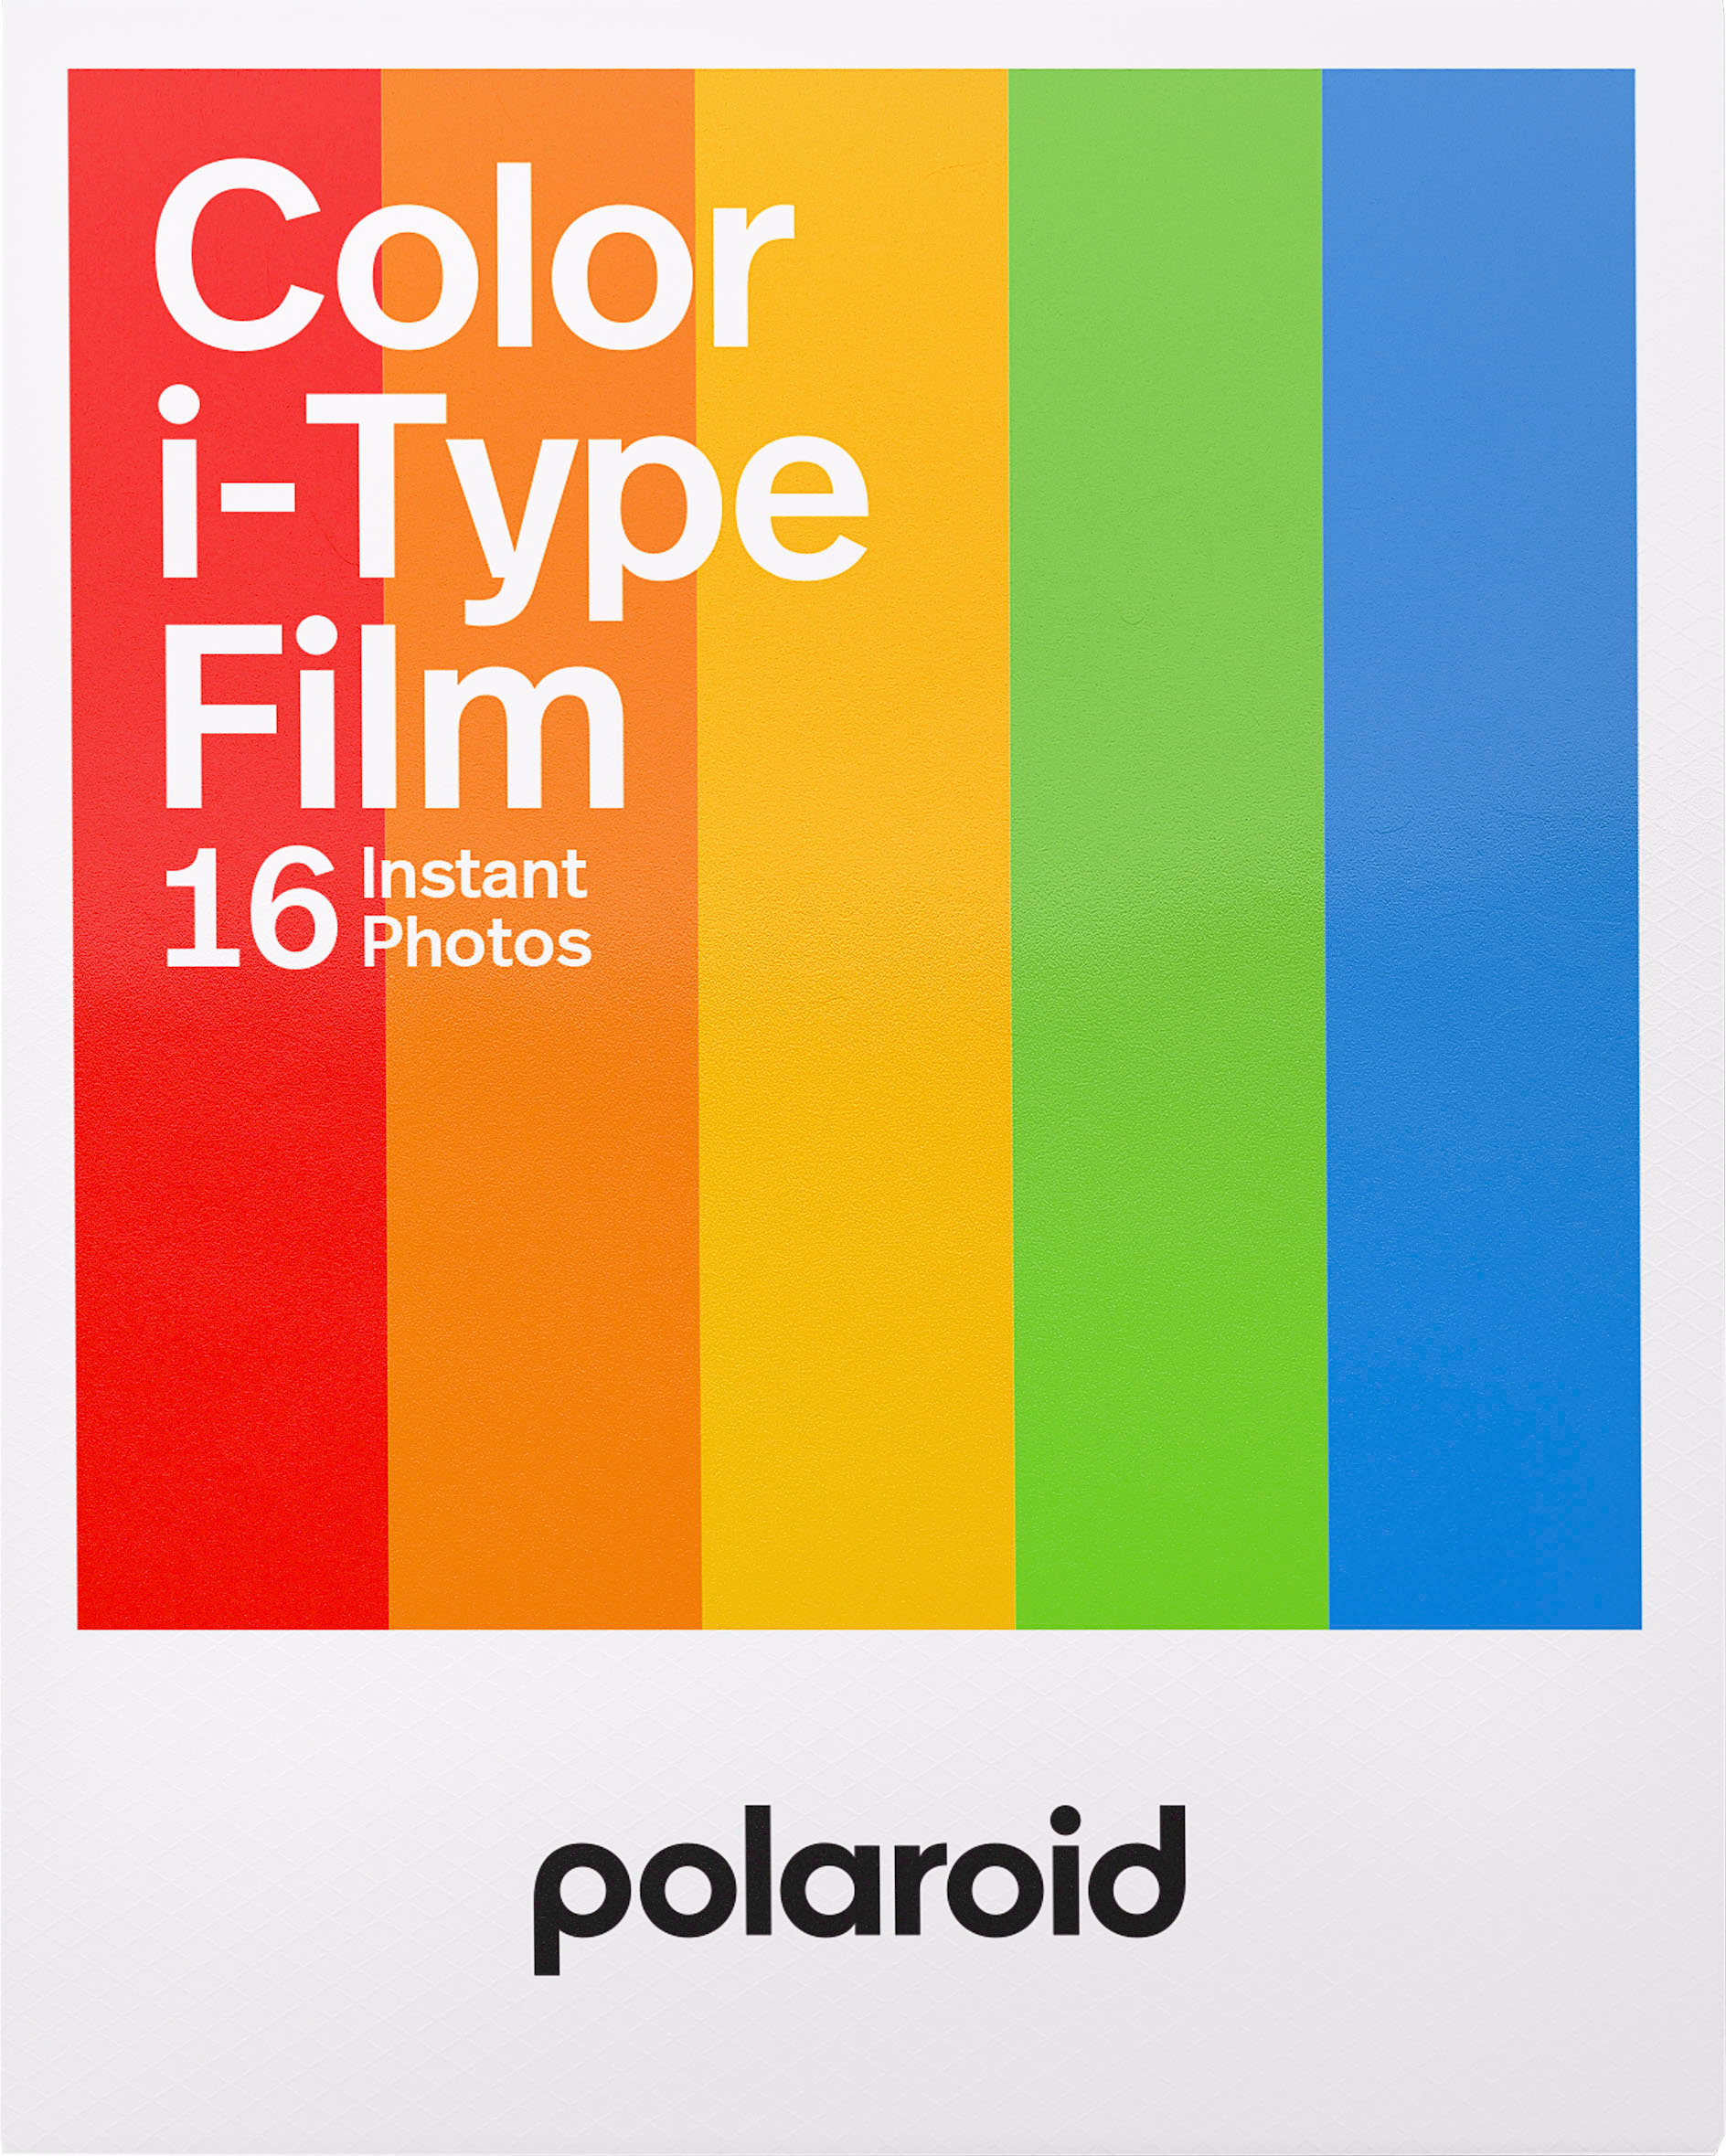 Polaroid Black and White Instant Film for Polaroid 600